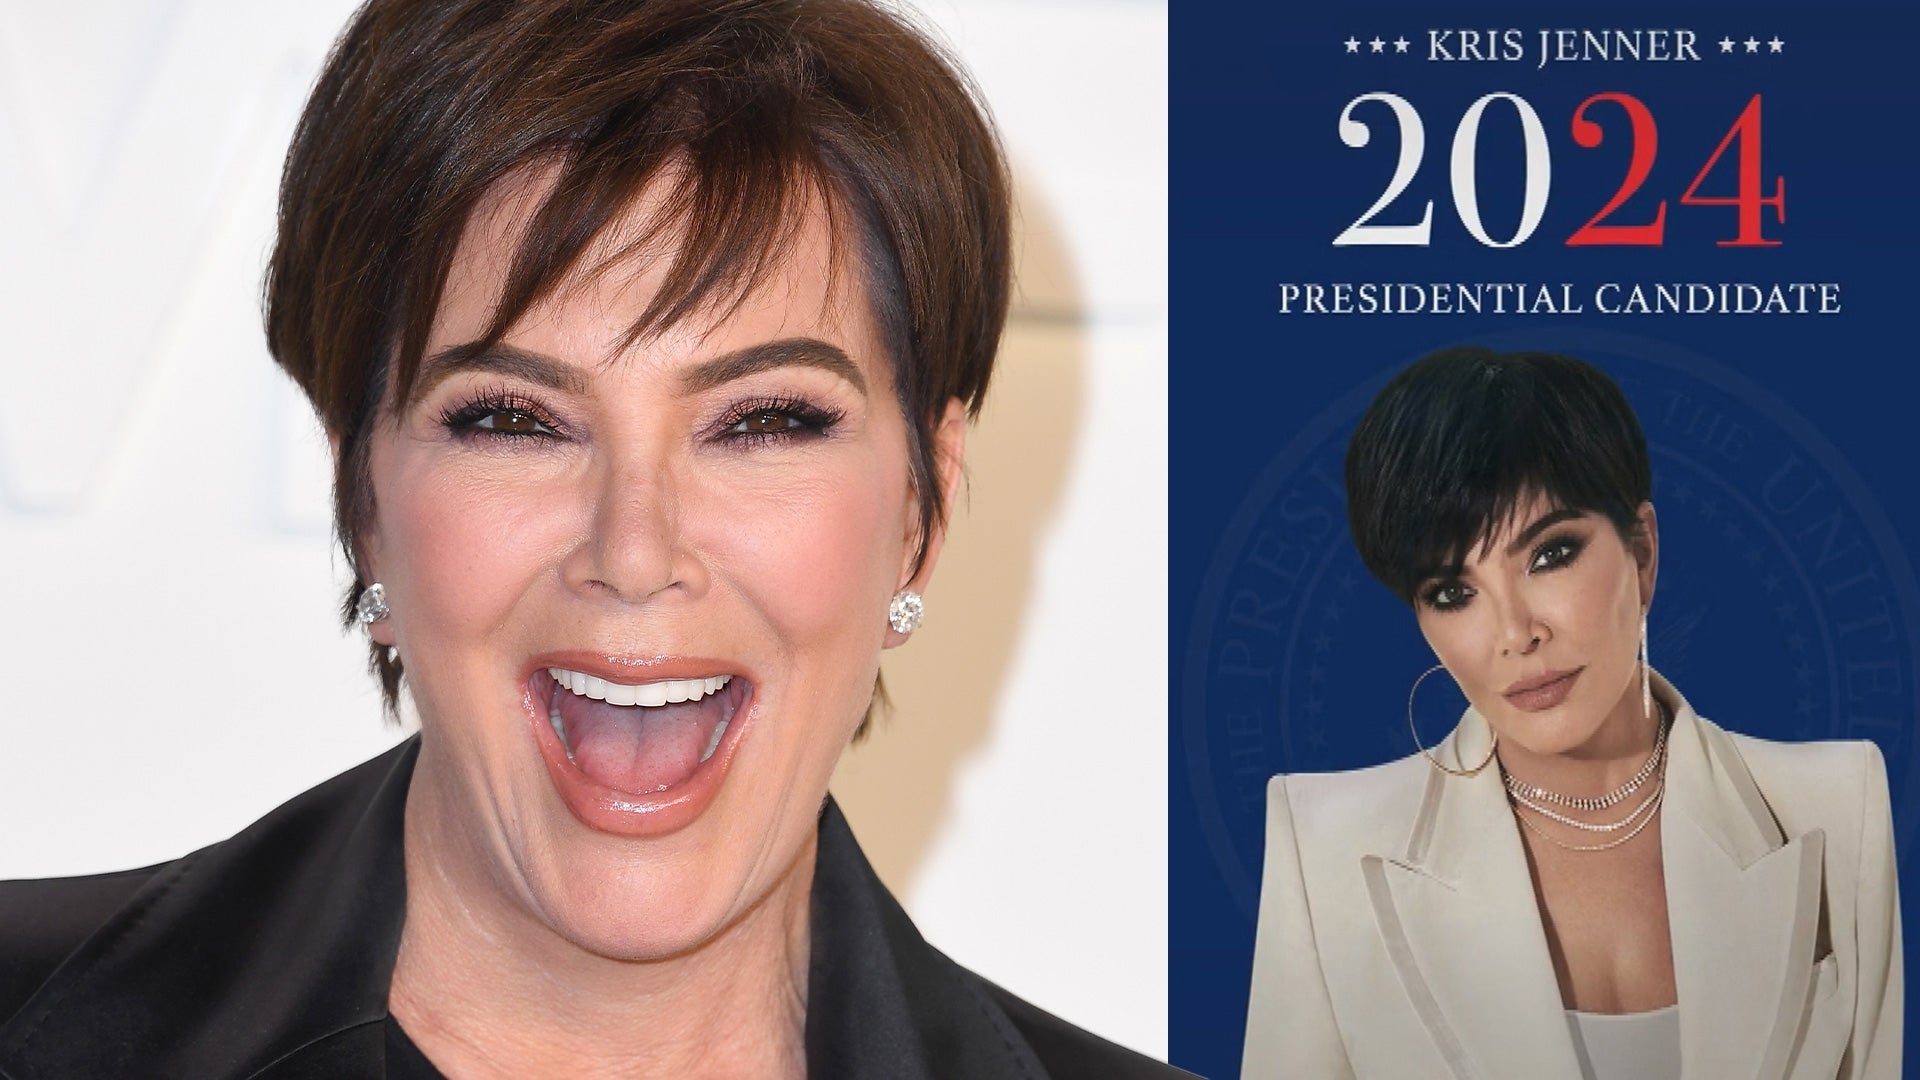 Kris Jenner Announces Her Run for President in 2024 in TikTok Prank